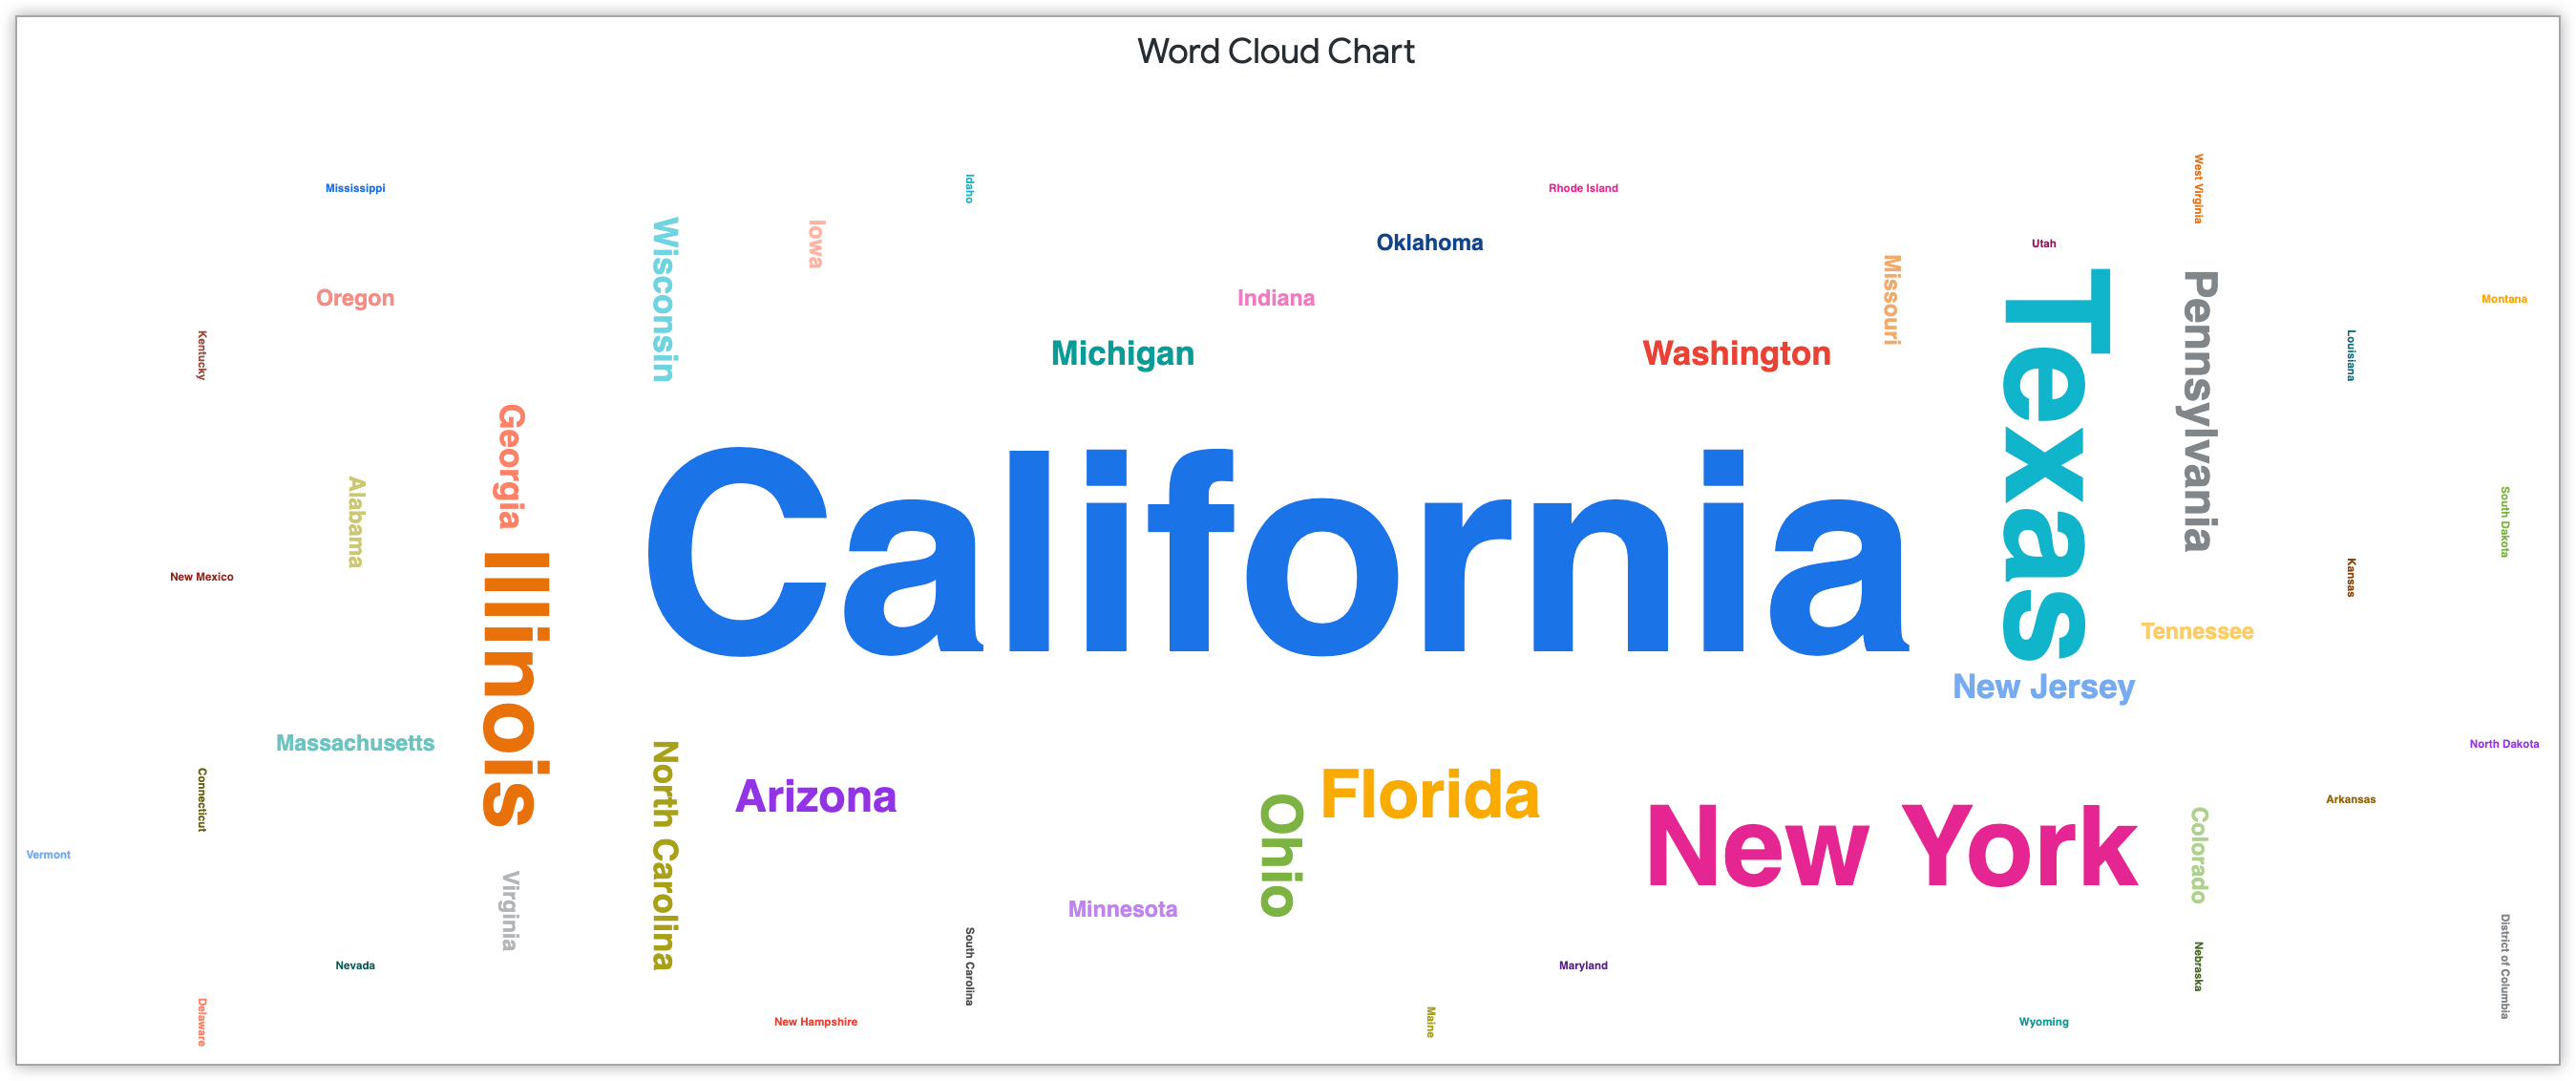 Graphique de nuage de mots affichant des noms d'états dimensionnés en fonction du nombre de clients dans cet État.